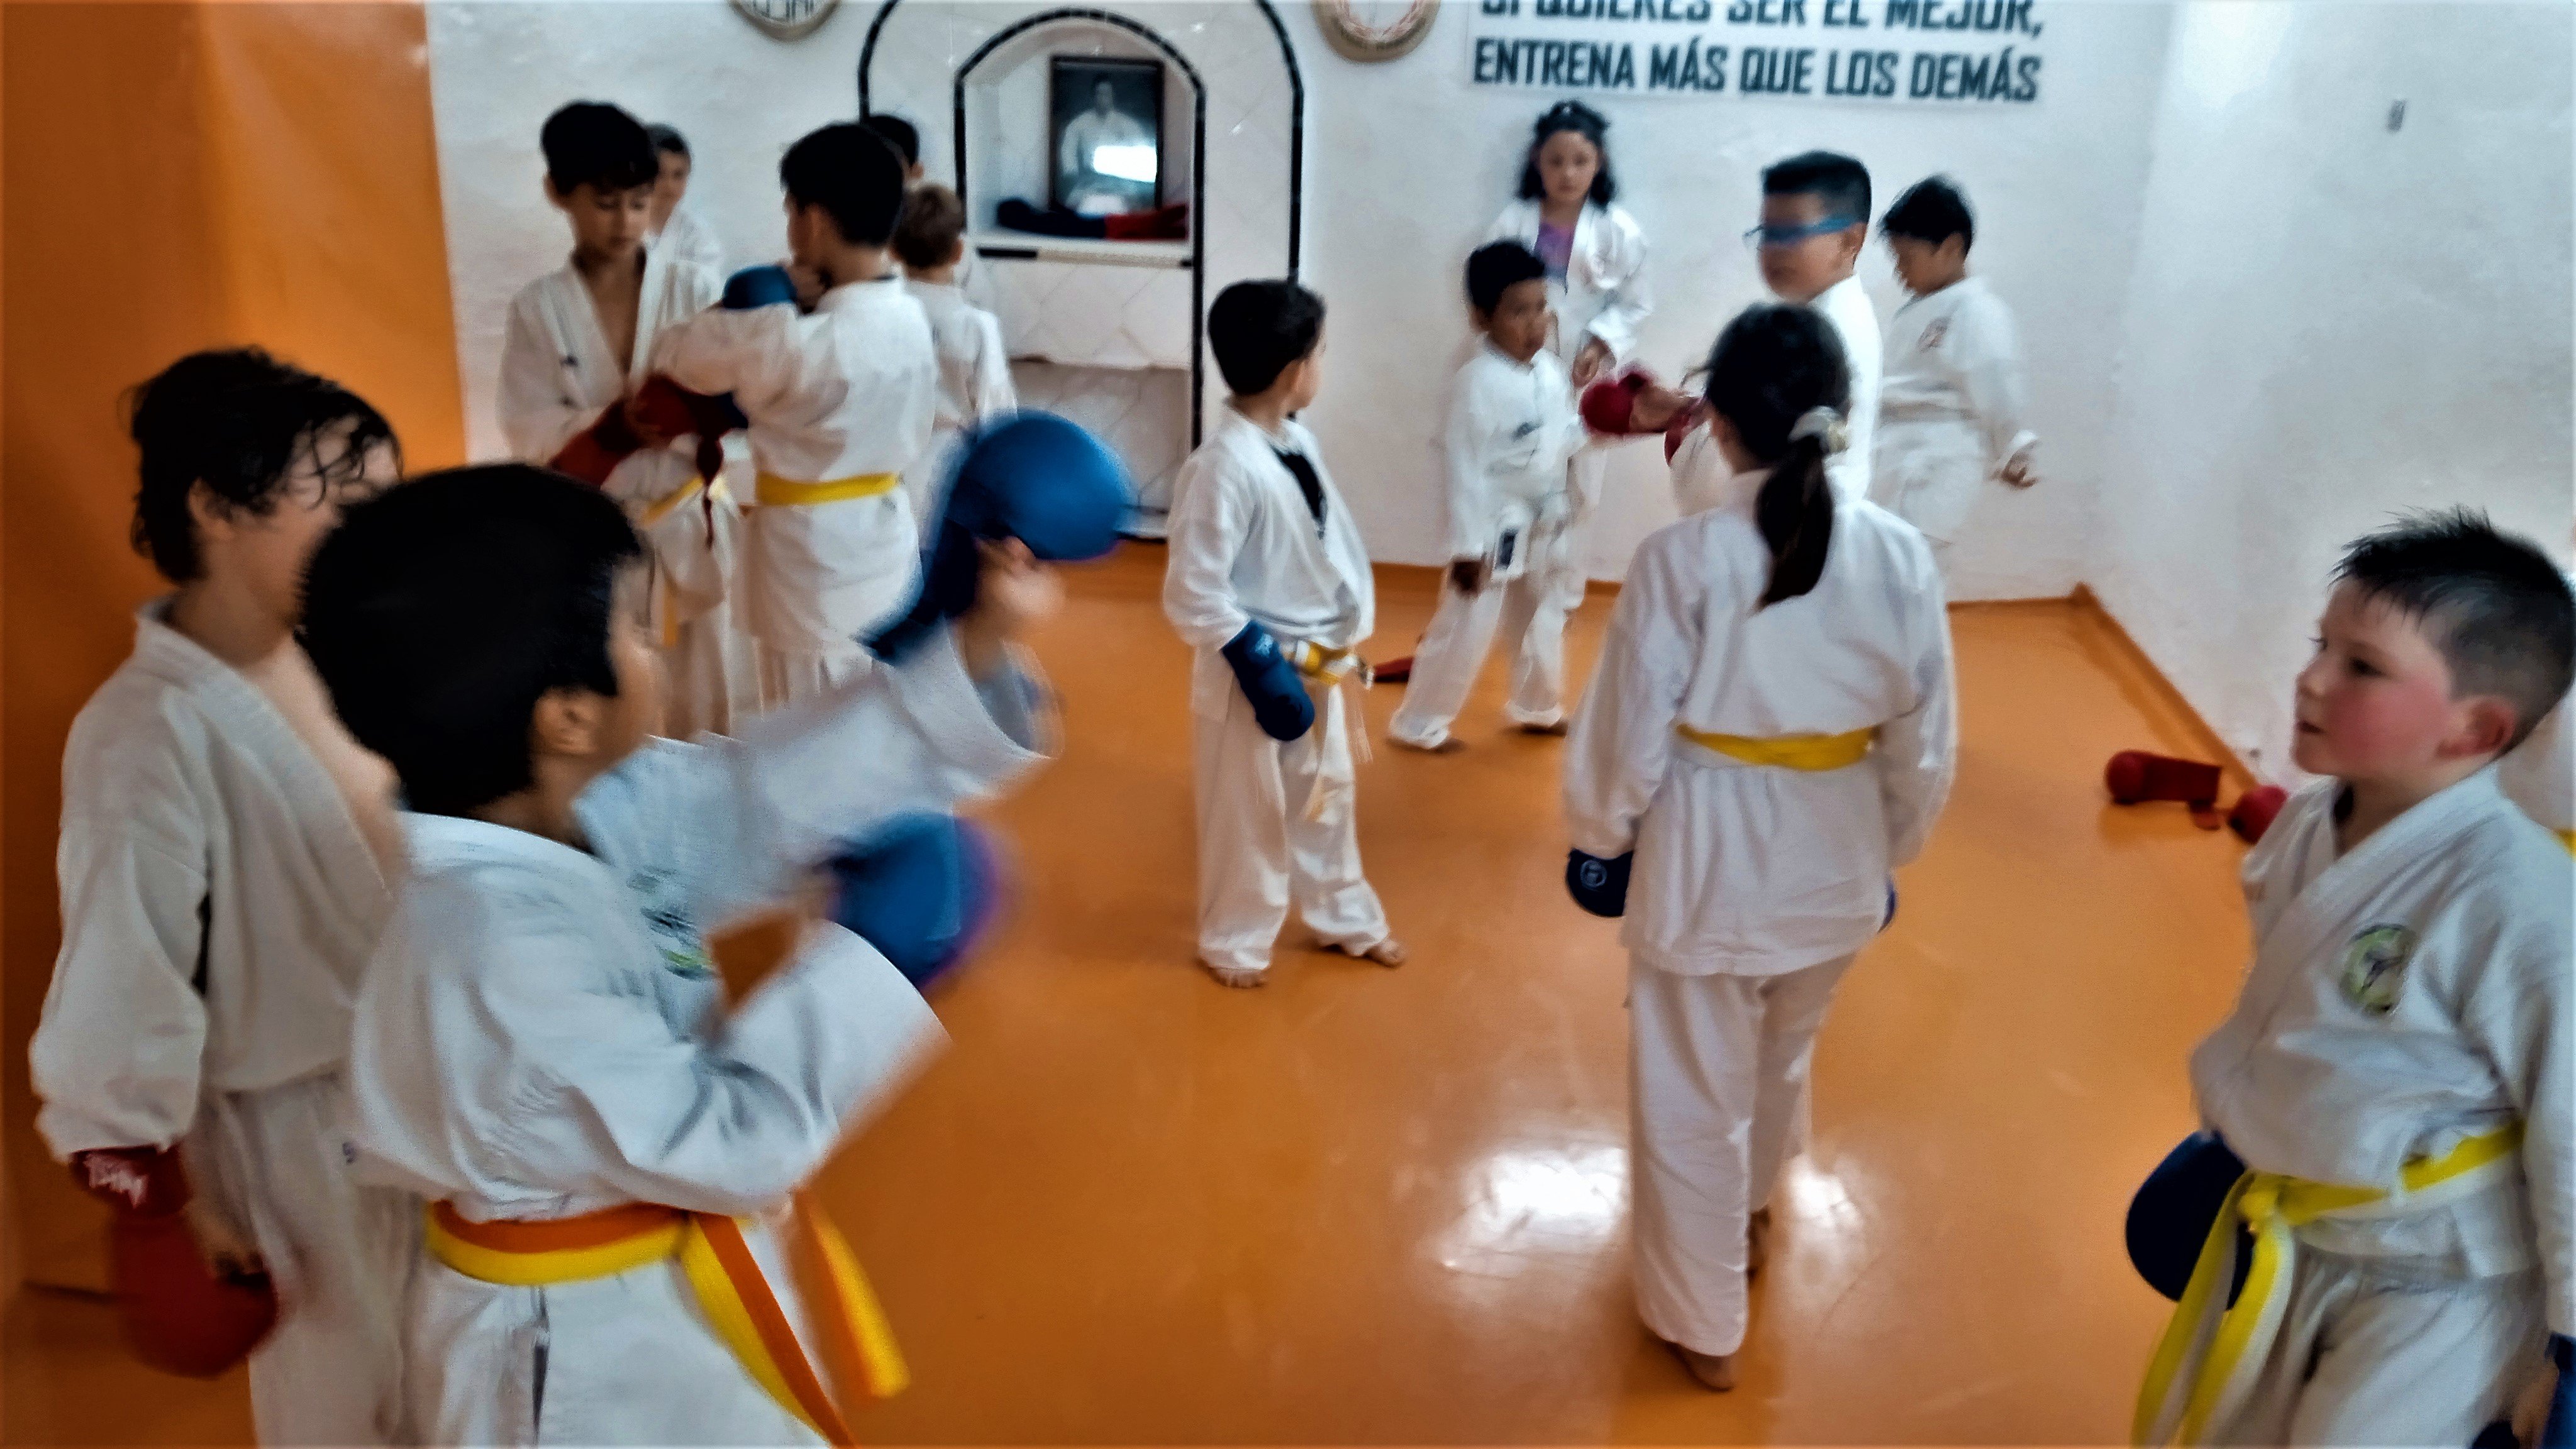 Clases de karate infantil en Carabanchel.